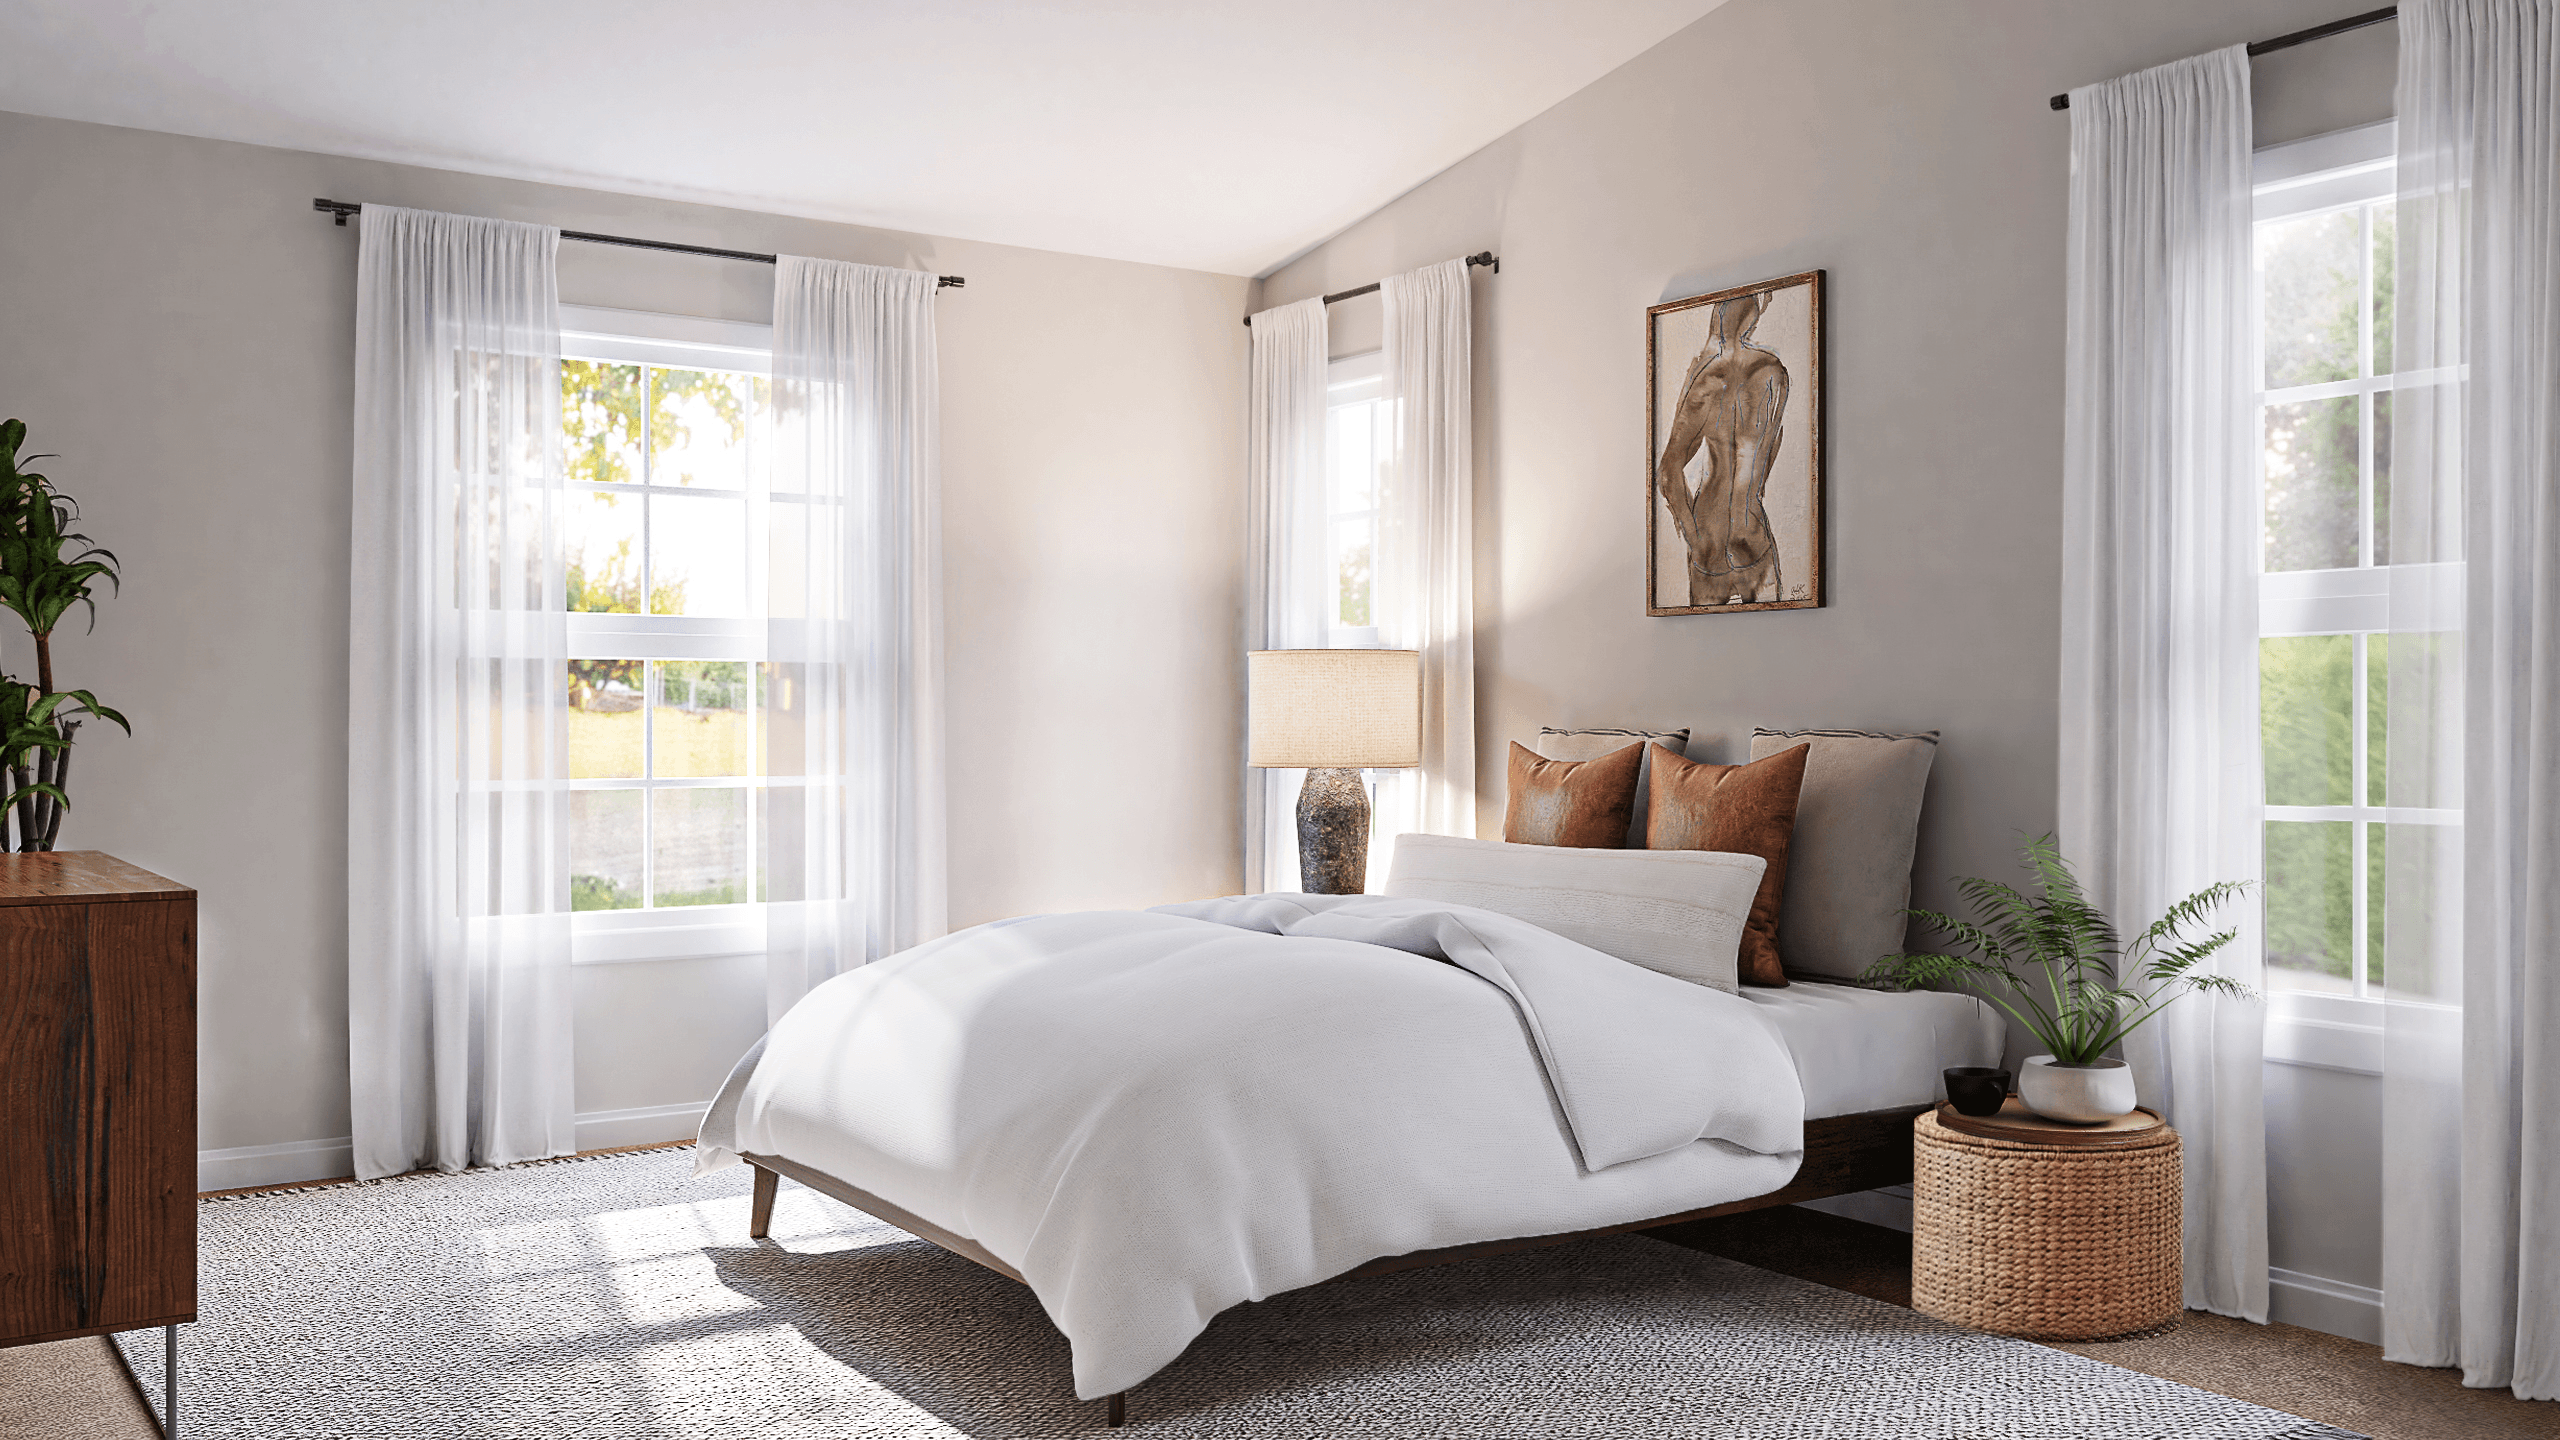 Living room design for Kayla by Spacejoy's online interior designer 